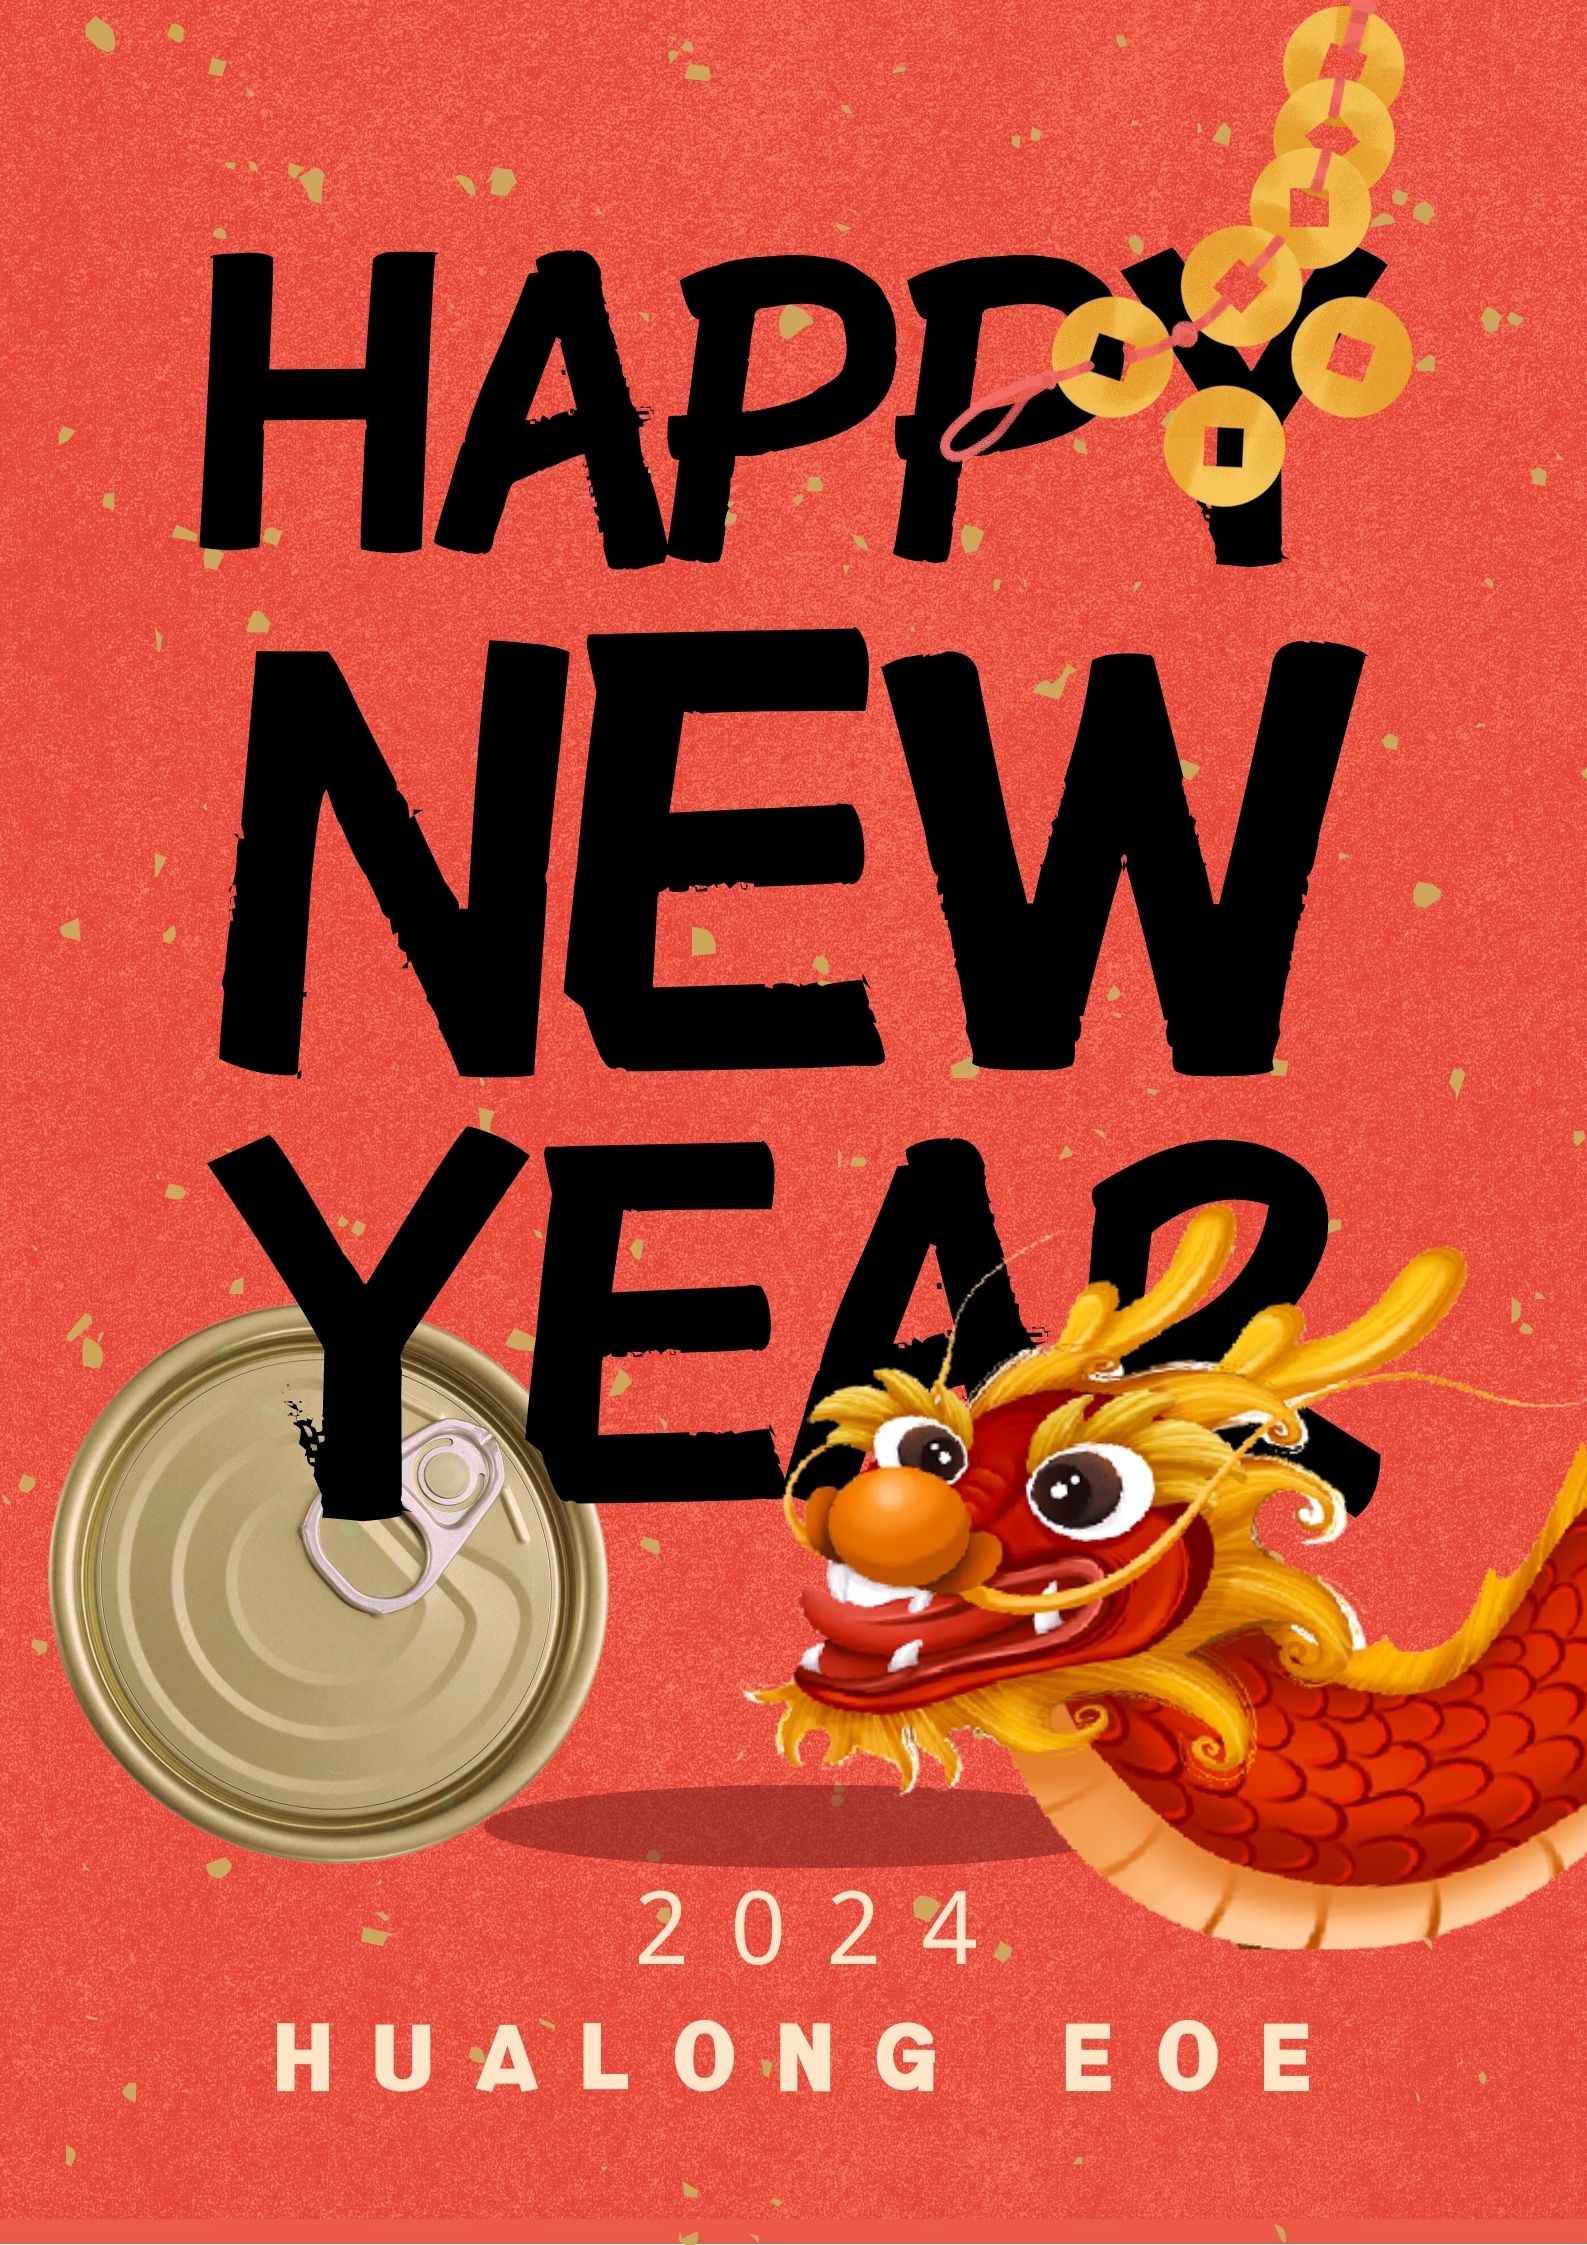 Hualong EOE Happy New Year!